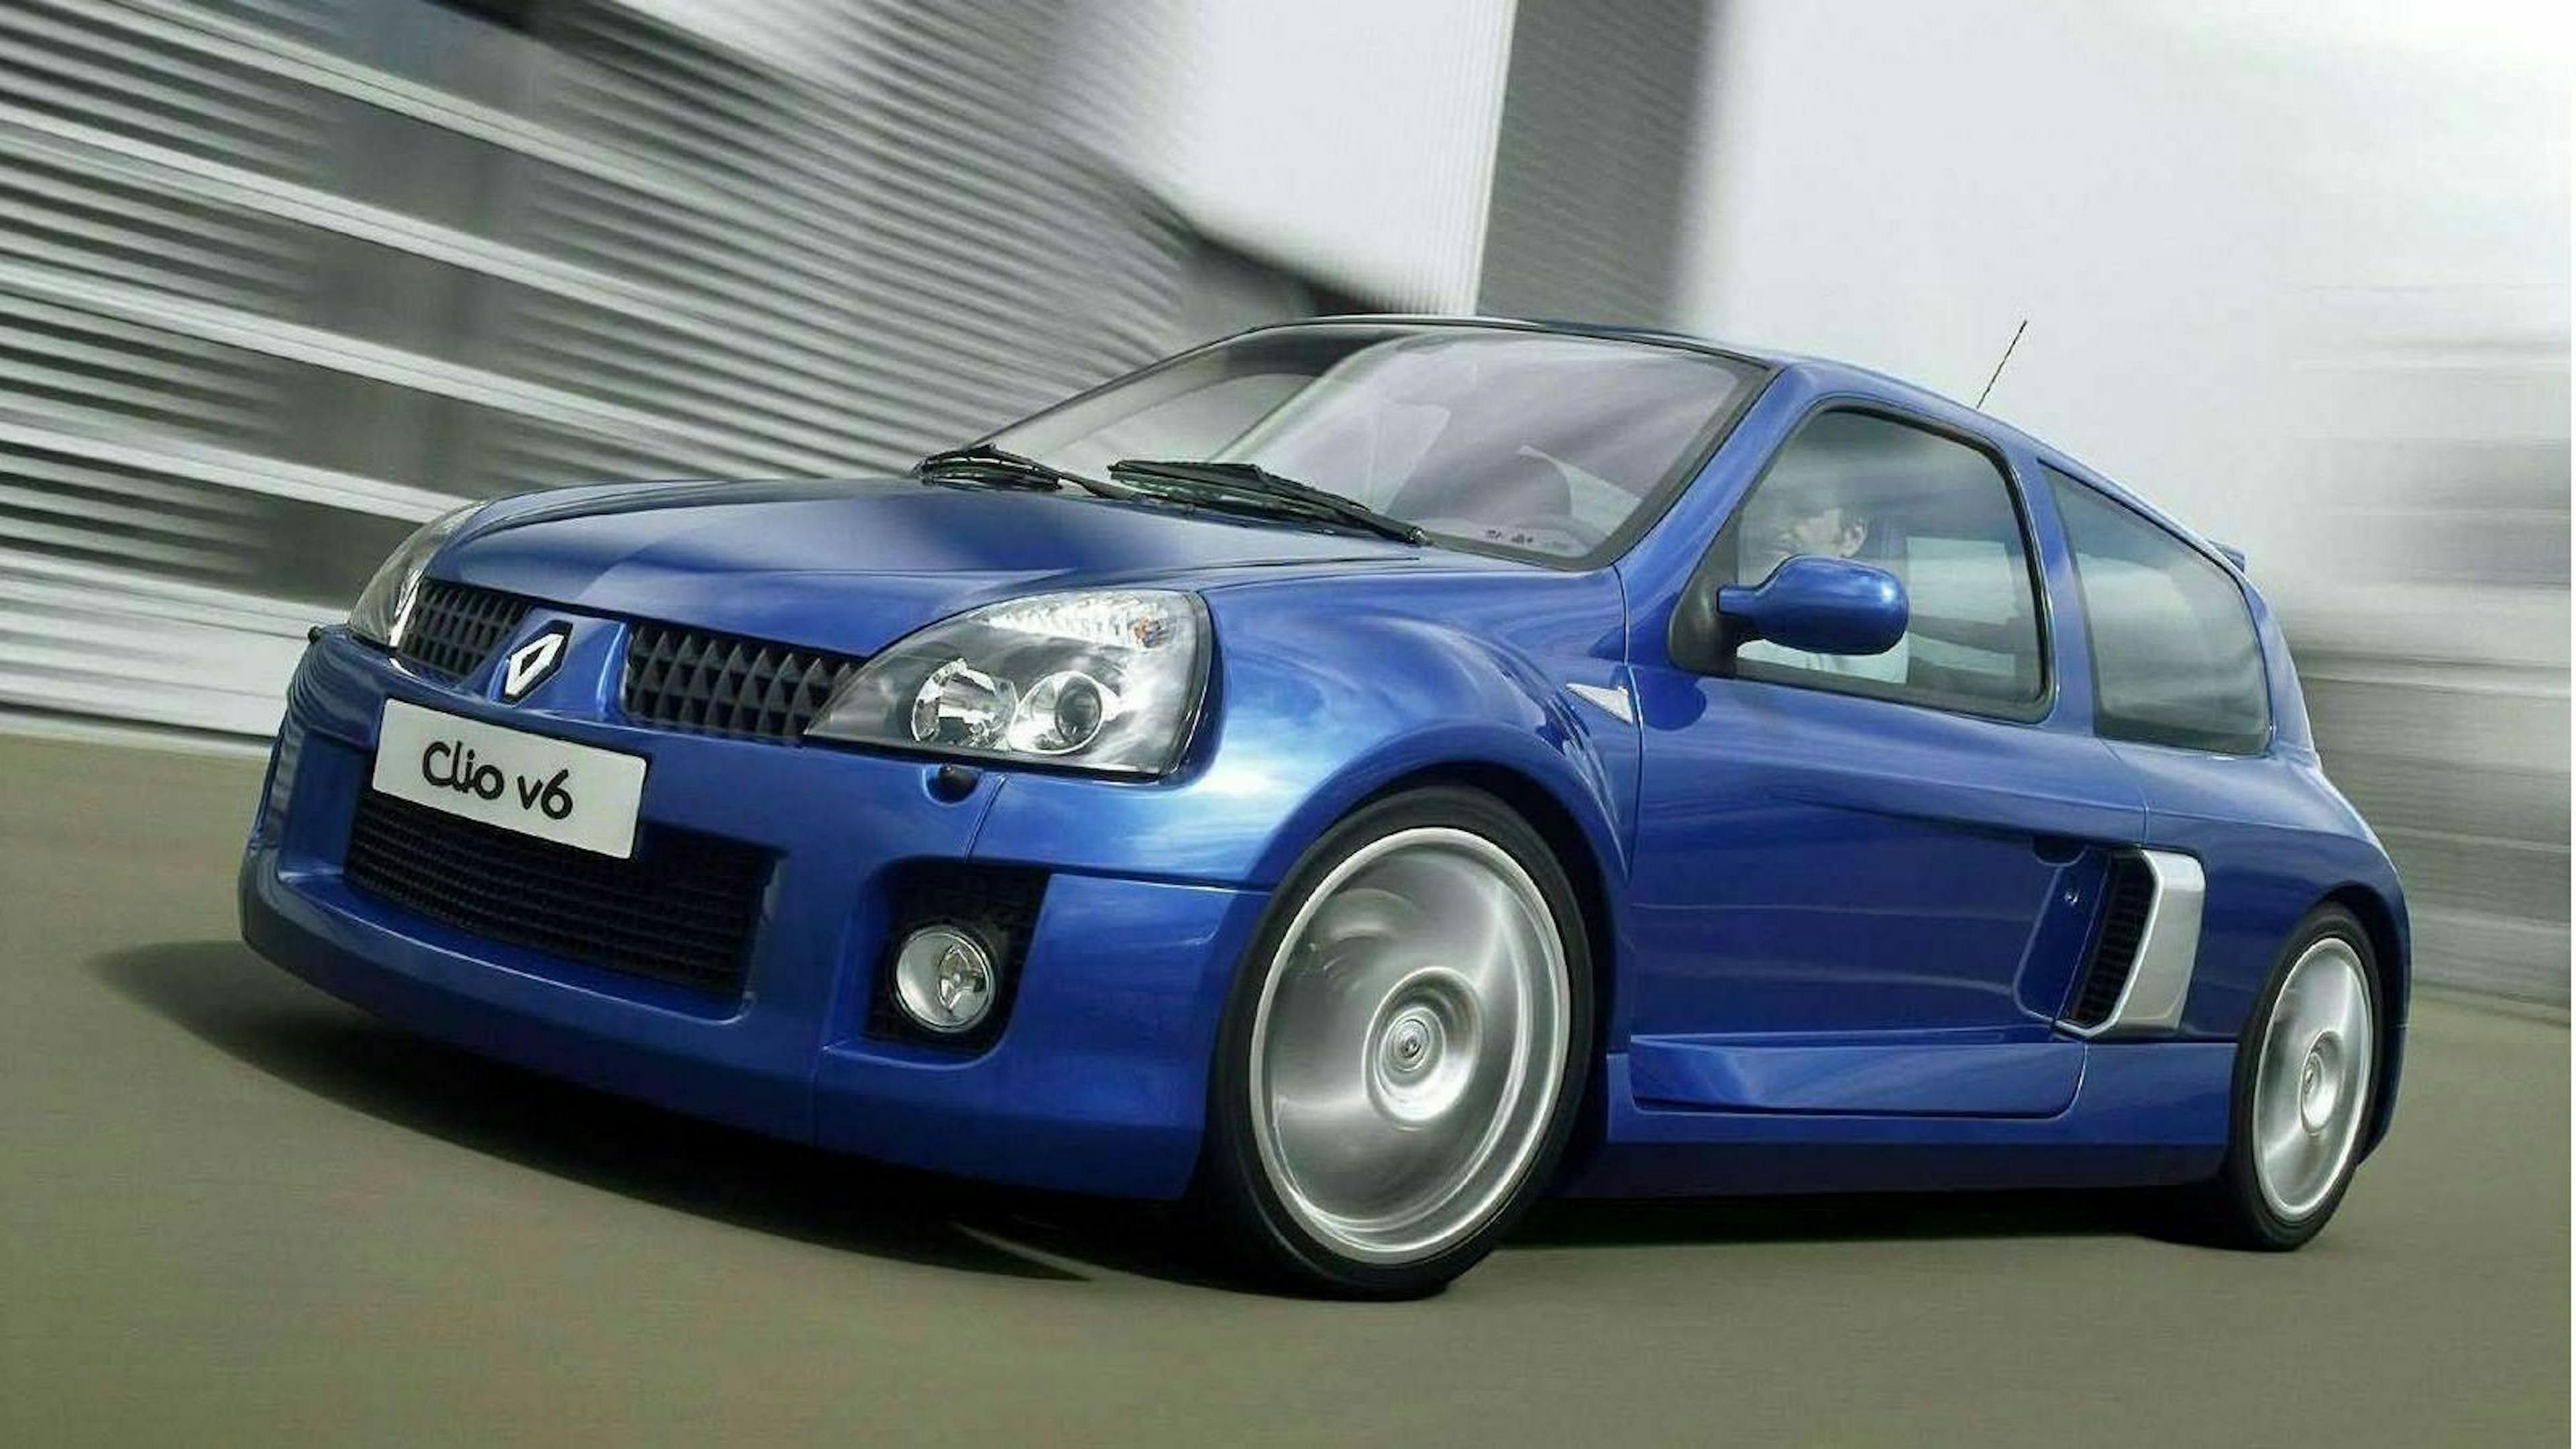 Zu sehen ist der Renault Clio V6, fahrend